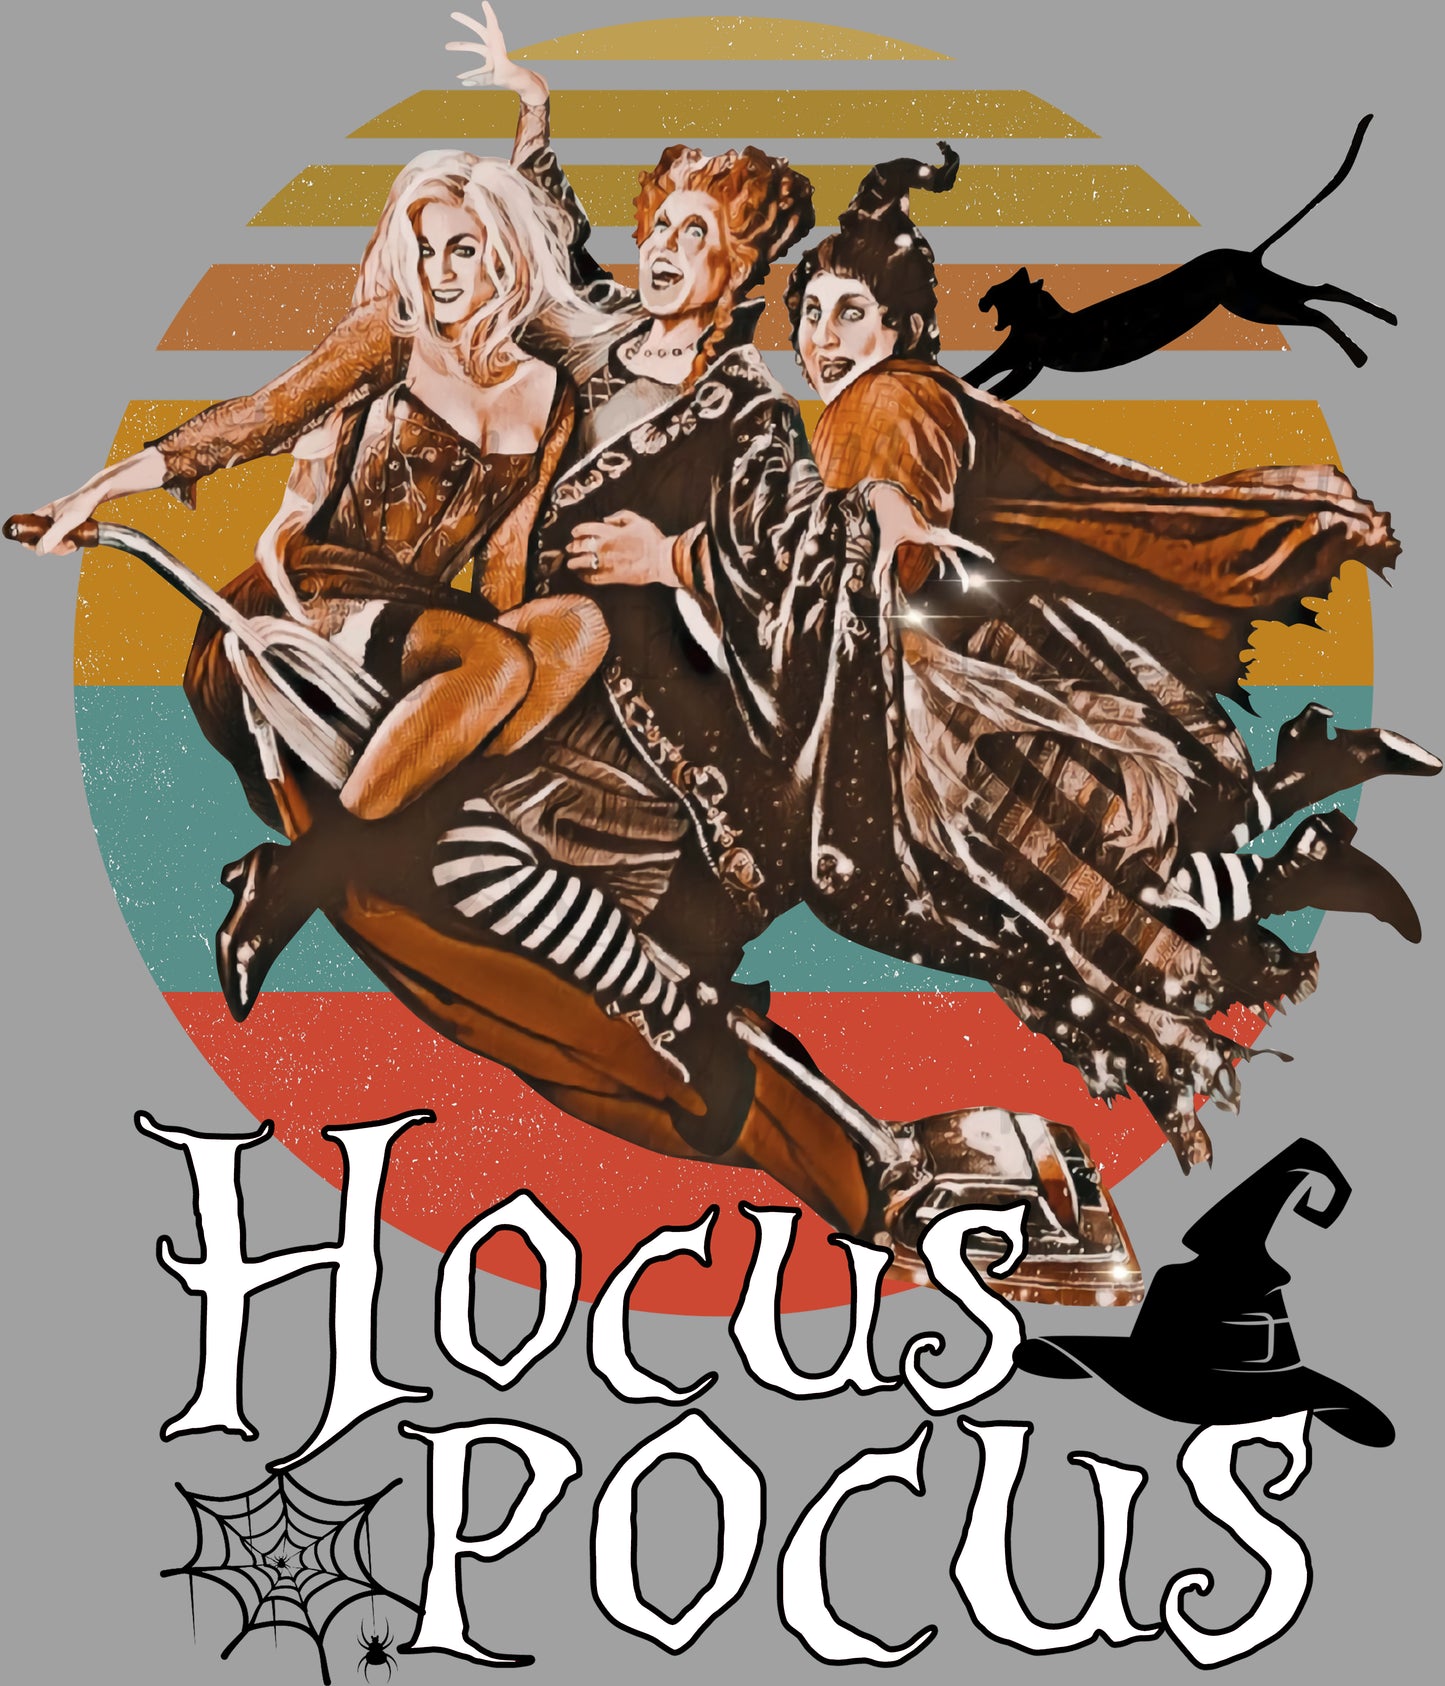 Vintage Hocus Pocus